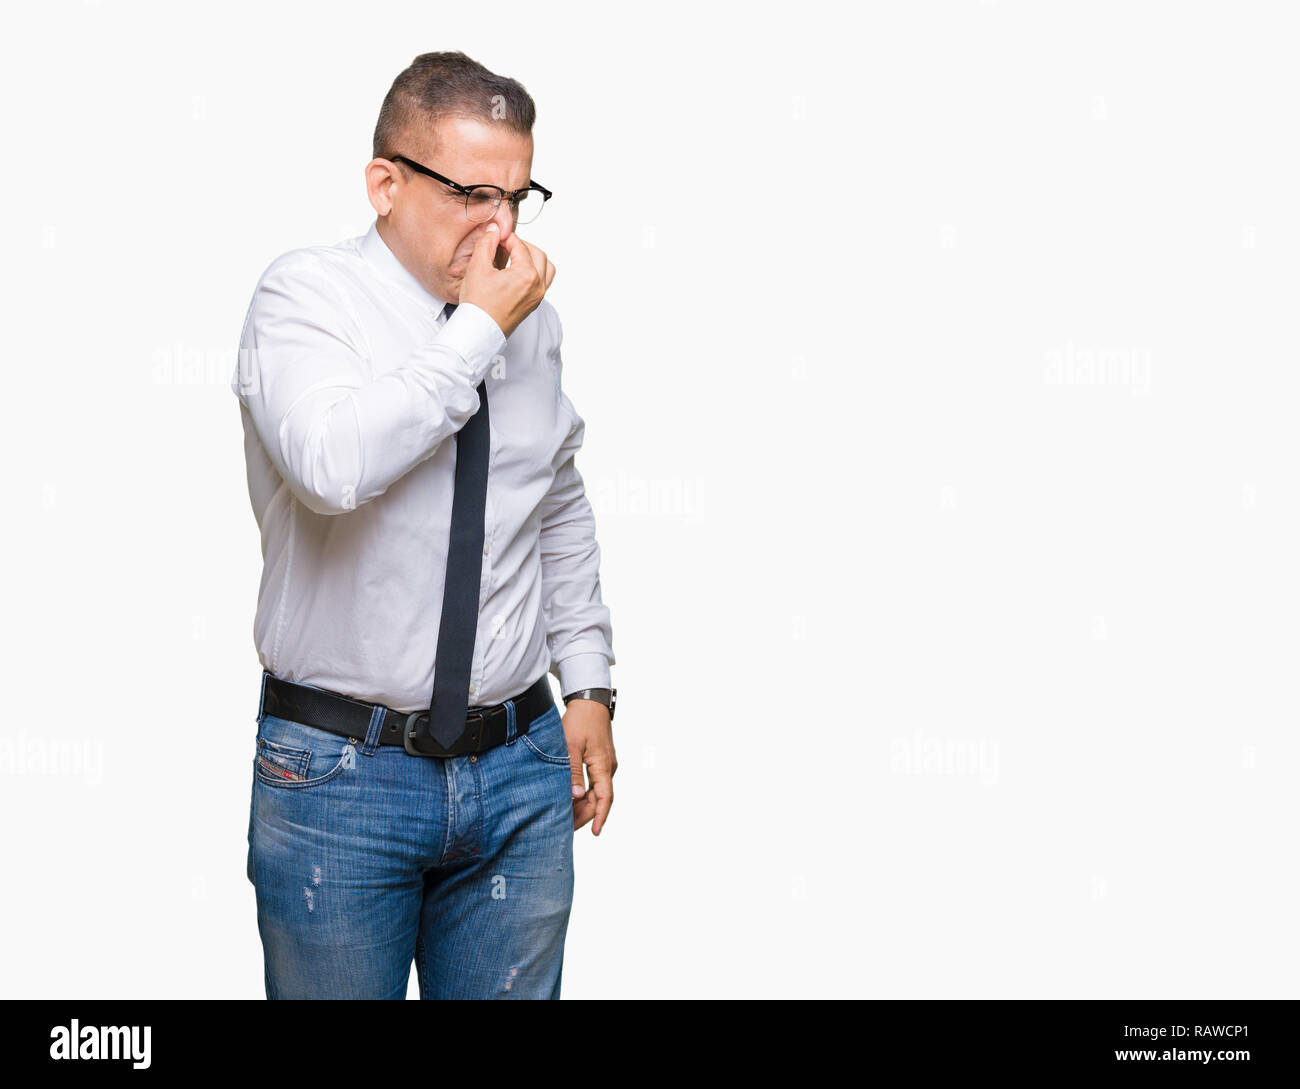 Mittleres Alter bussines arabischer Mann Brille über isolierte Hintergrund riechen etwas stinkig und ekelhaft, unerträglichen Geruch, mit Atem Stockfoto